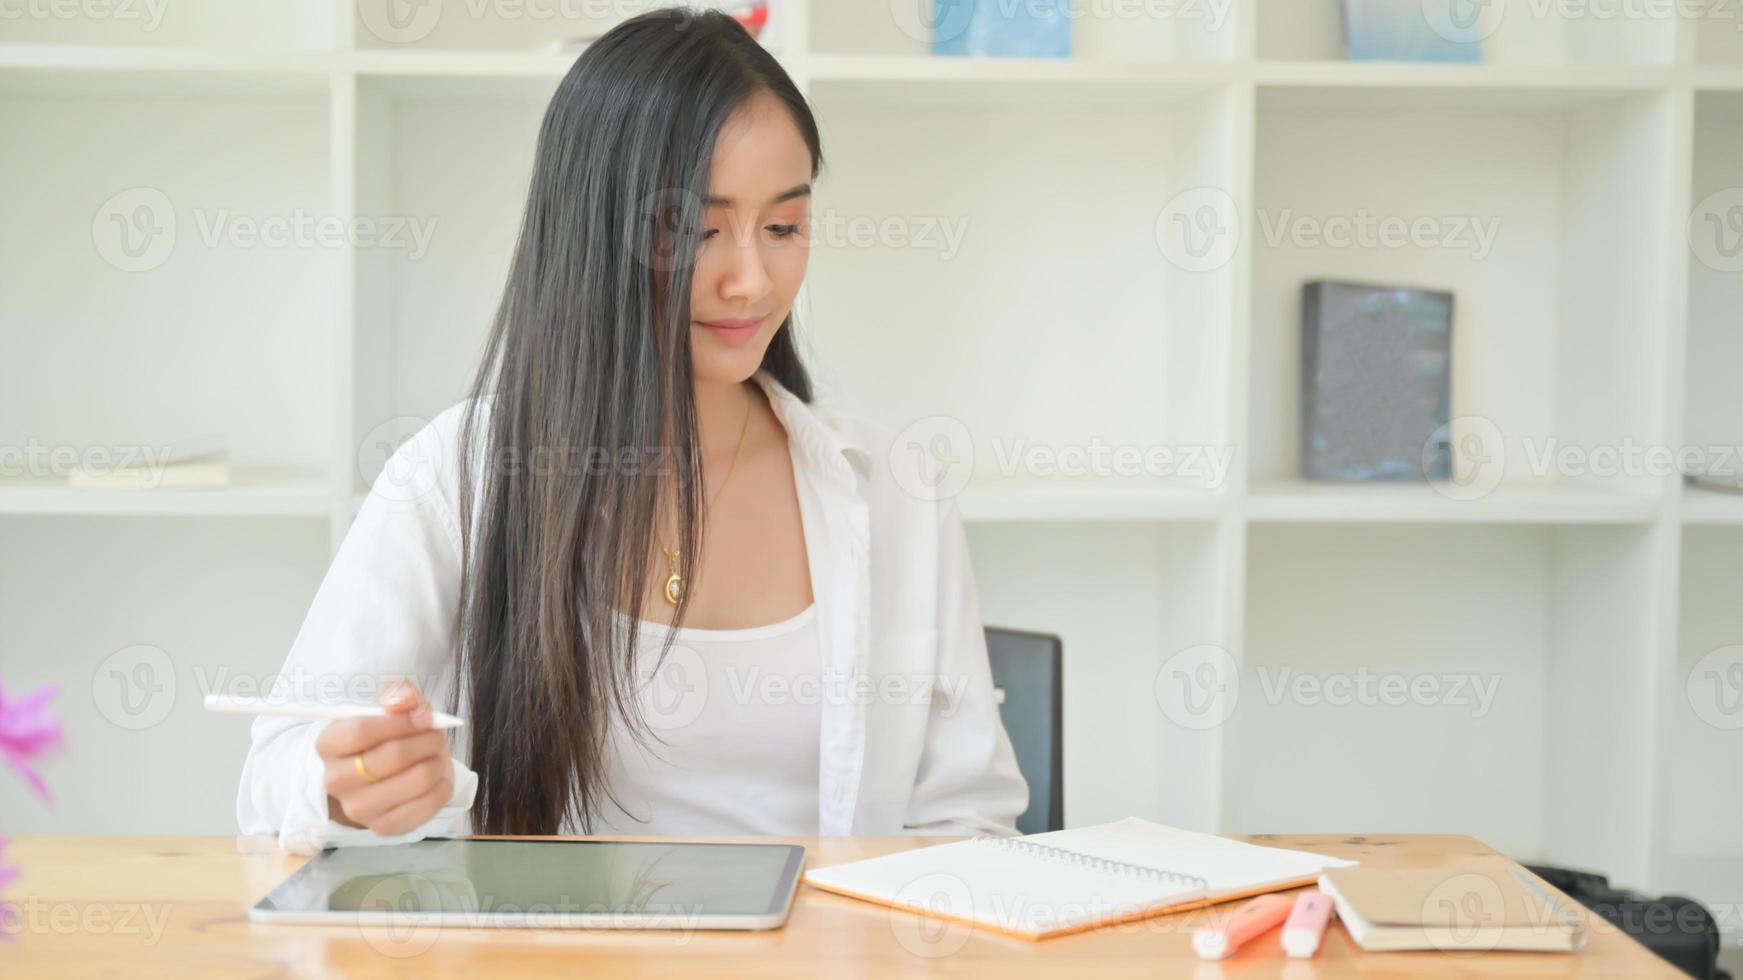 een jonge vrouwelijke ontwerper die een pen in haar hand houdt, gebruikt een tablet om haar nieuwe project te ontwerpen. foto